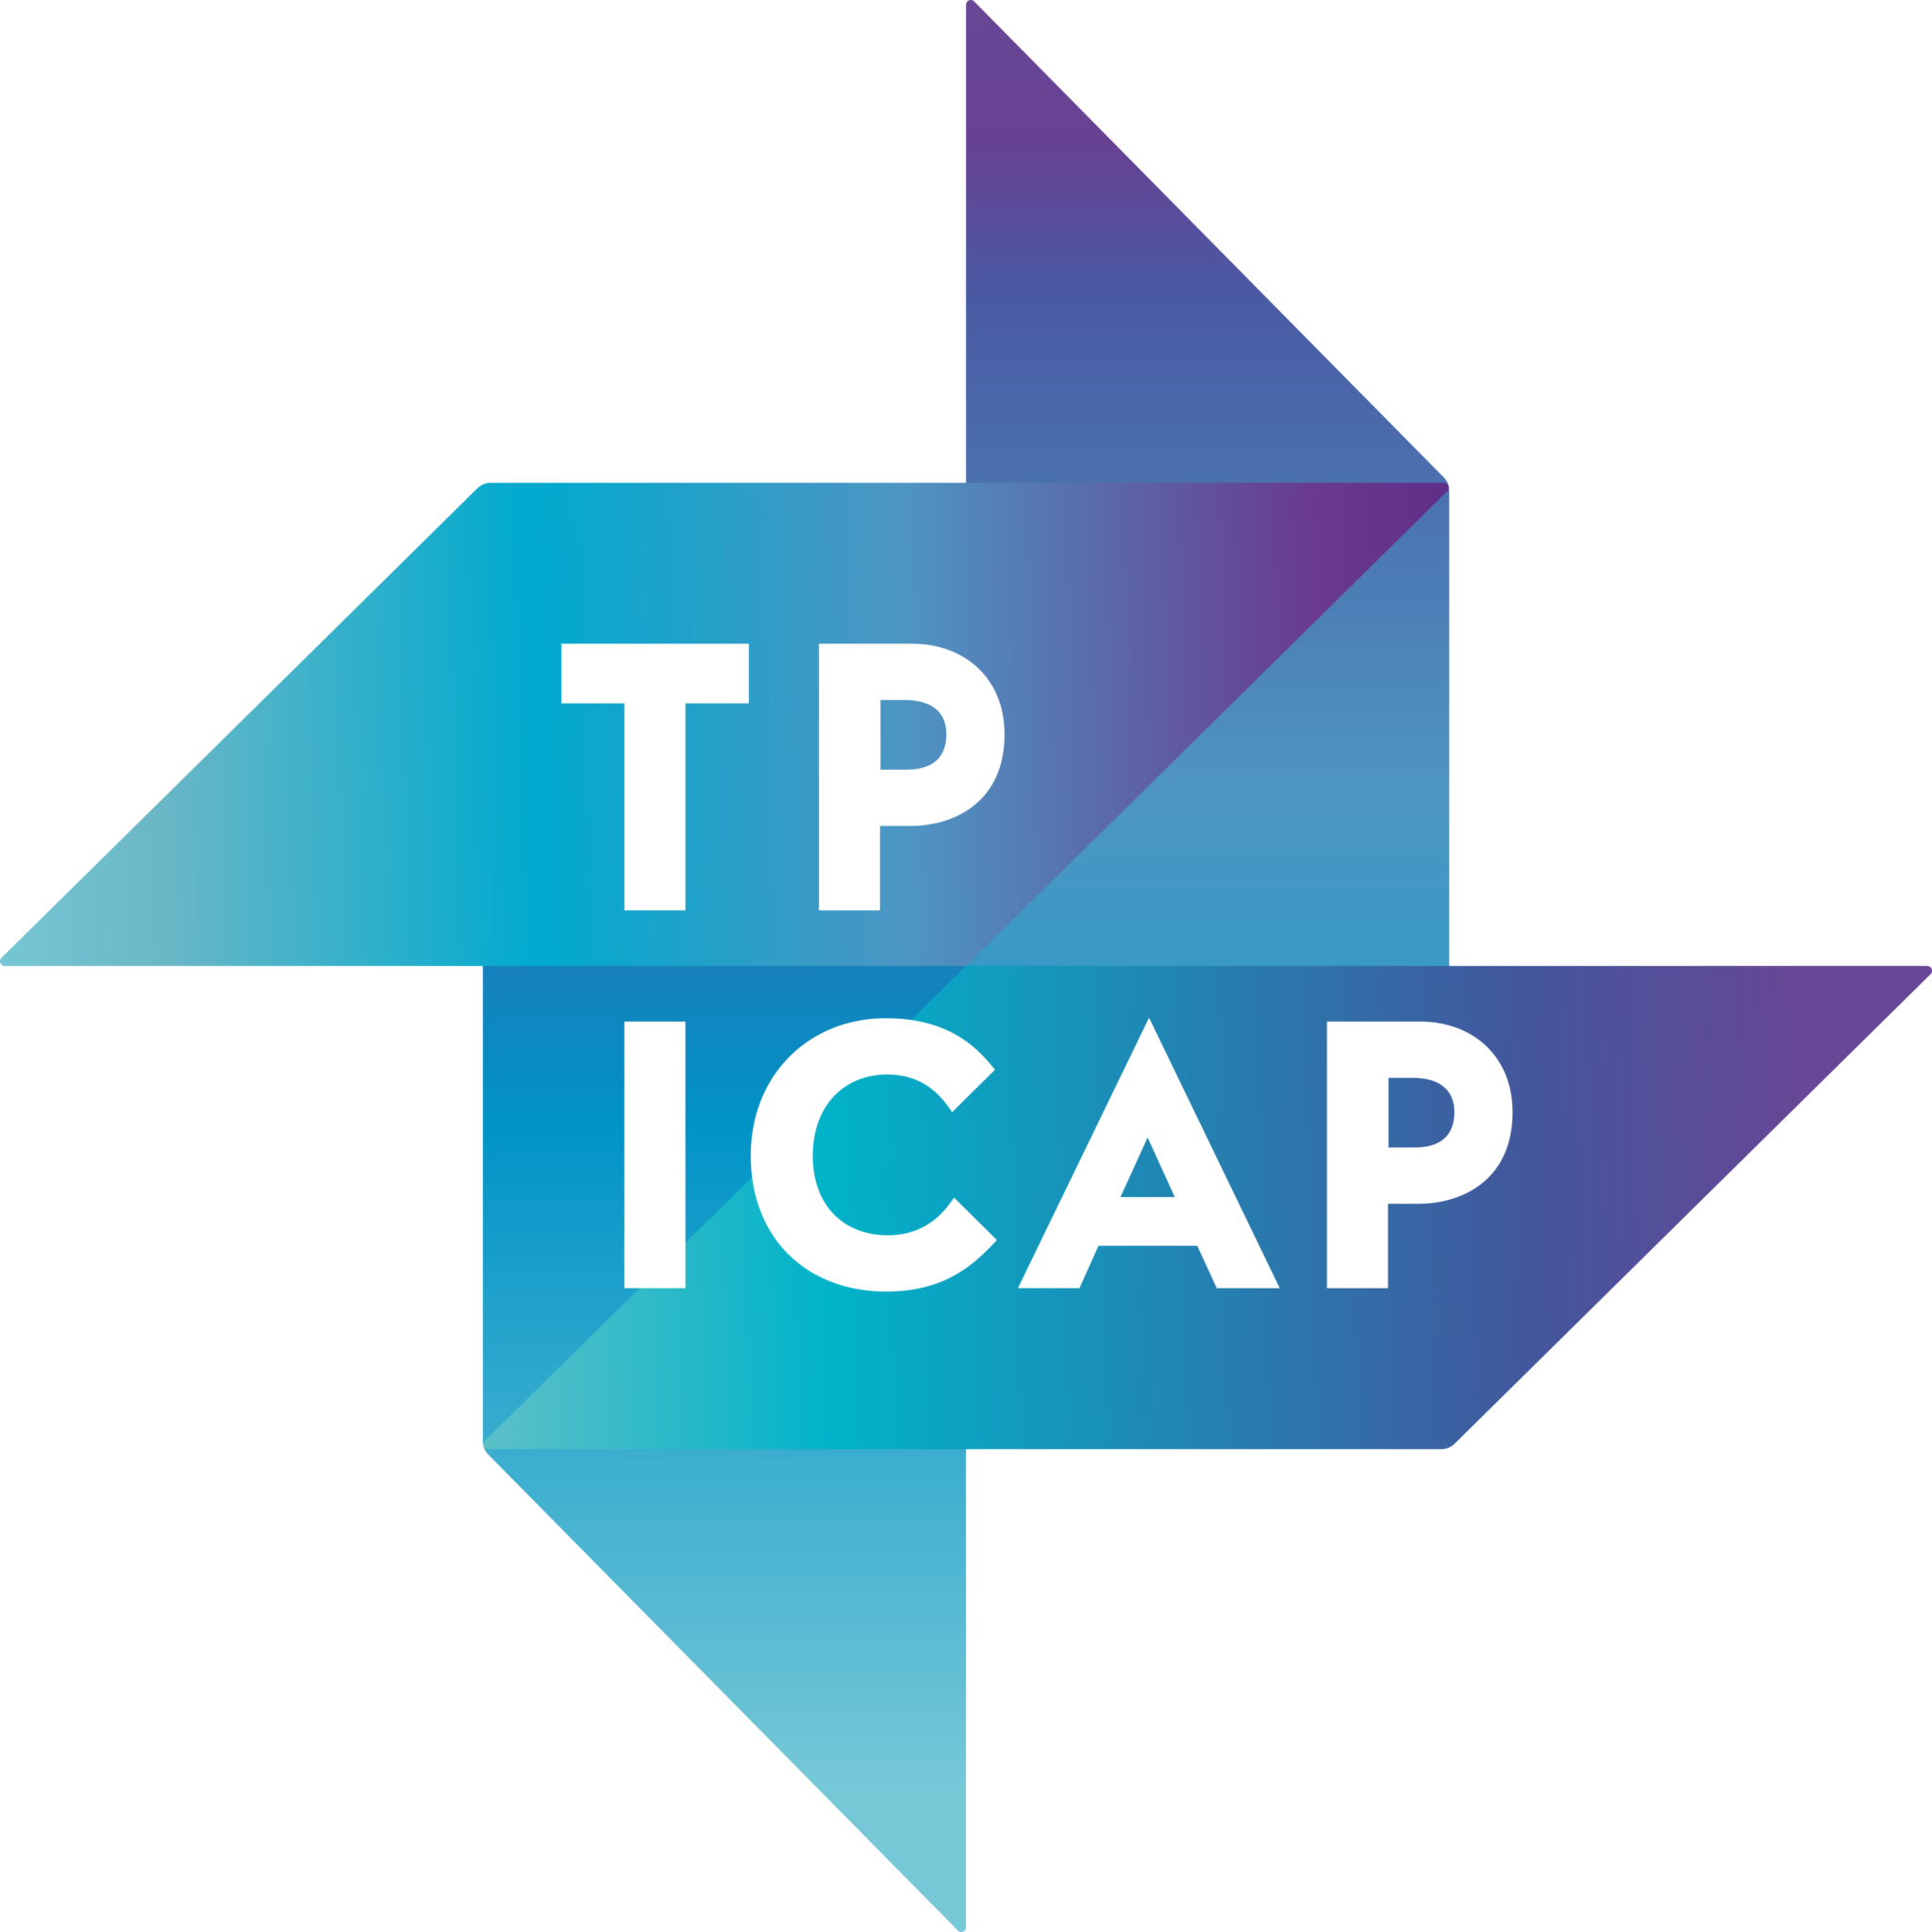 TP ICAP Logos Download